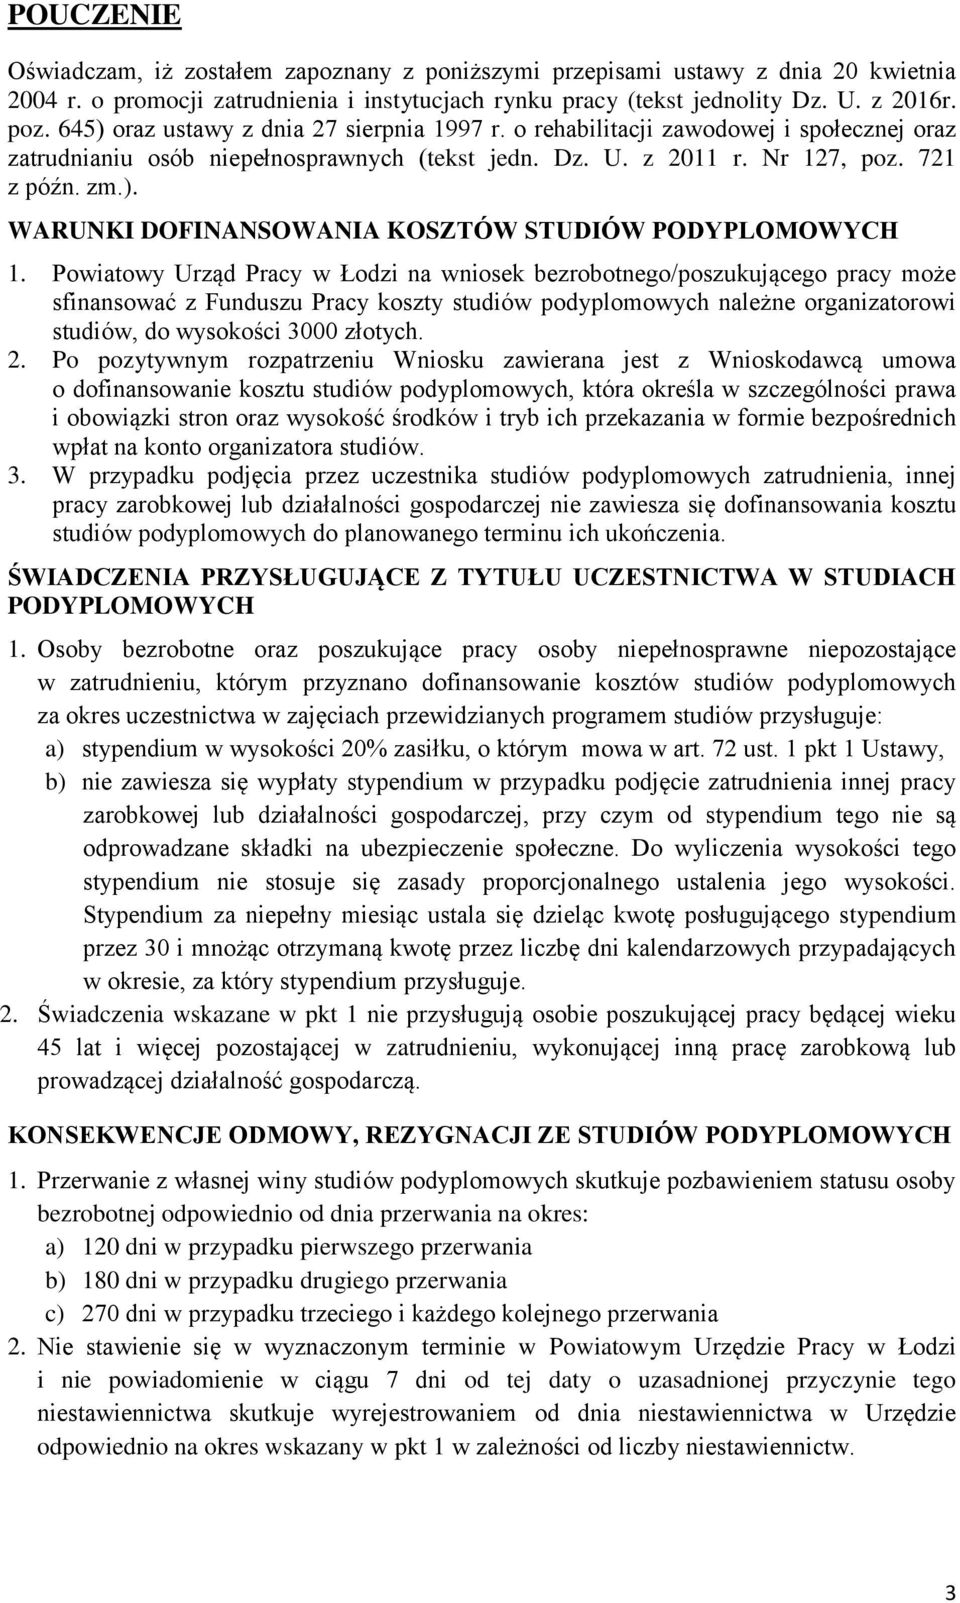 Powiatowy Urząd Pracy w Łodzi na wniosek bezrobotnego/poszukującego pracy może sfinansować z Funduszu Pracy koszty studiów podyplomowych należne organizatorowi studiów, do wysokości 3000 złotych. 2.